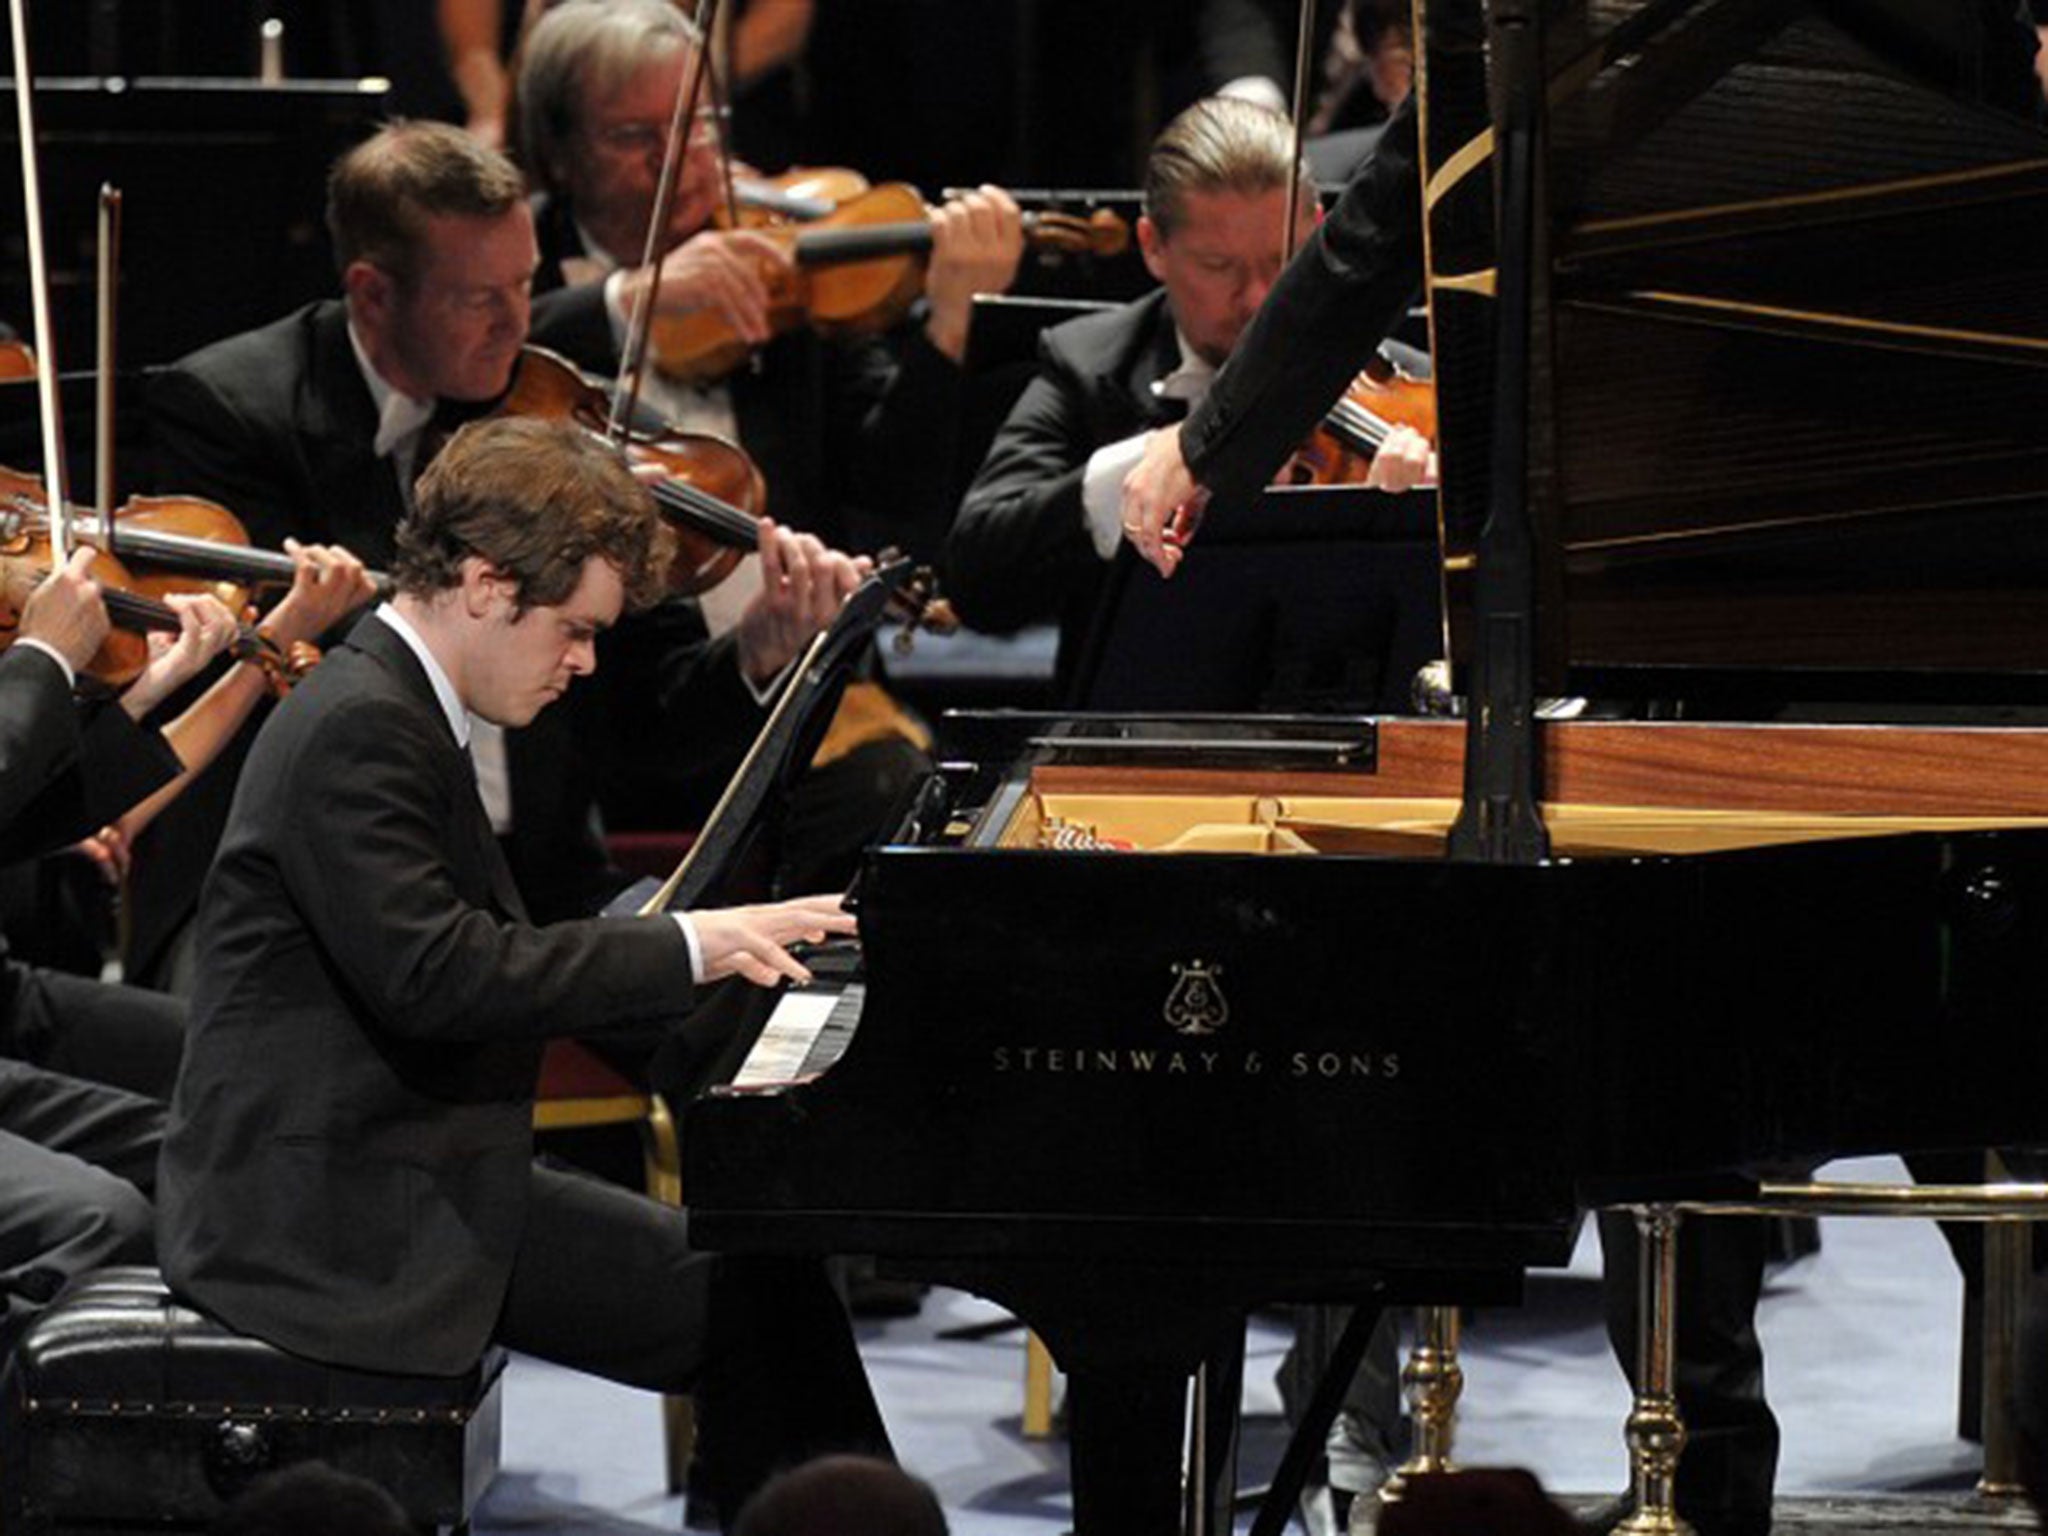 Benjamin Grosvenor performs Chopin's Piano Concerto No. 1 in E minor, Op. 11